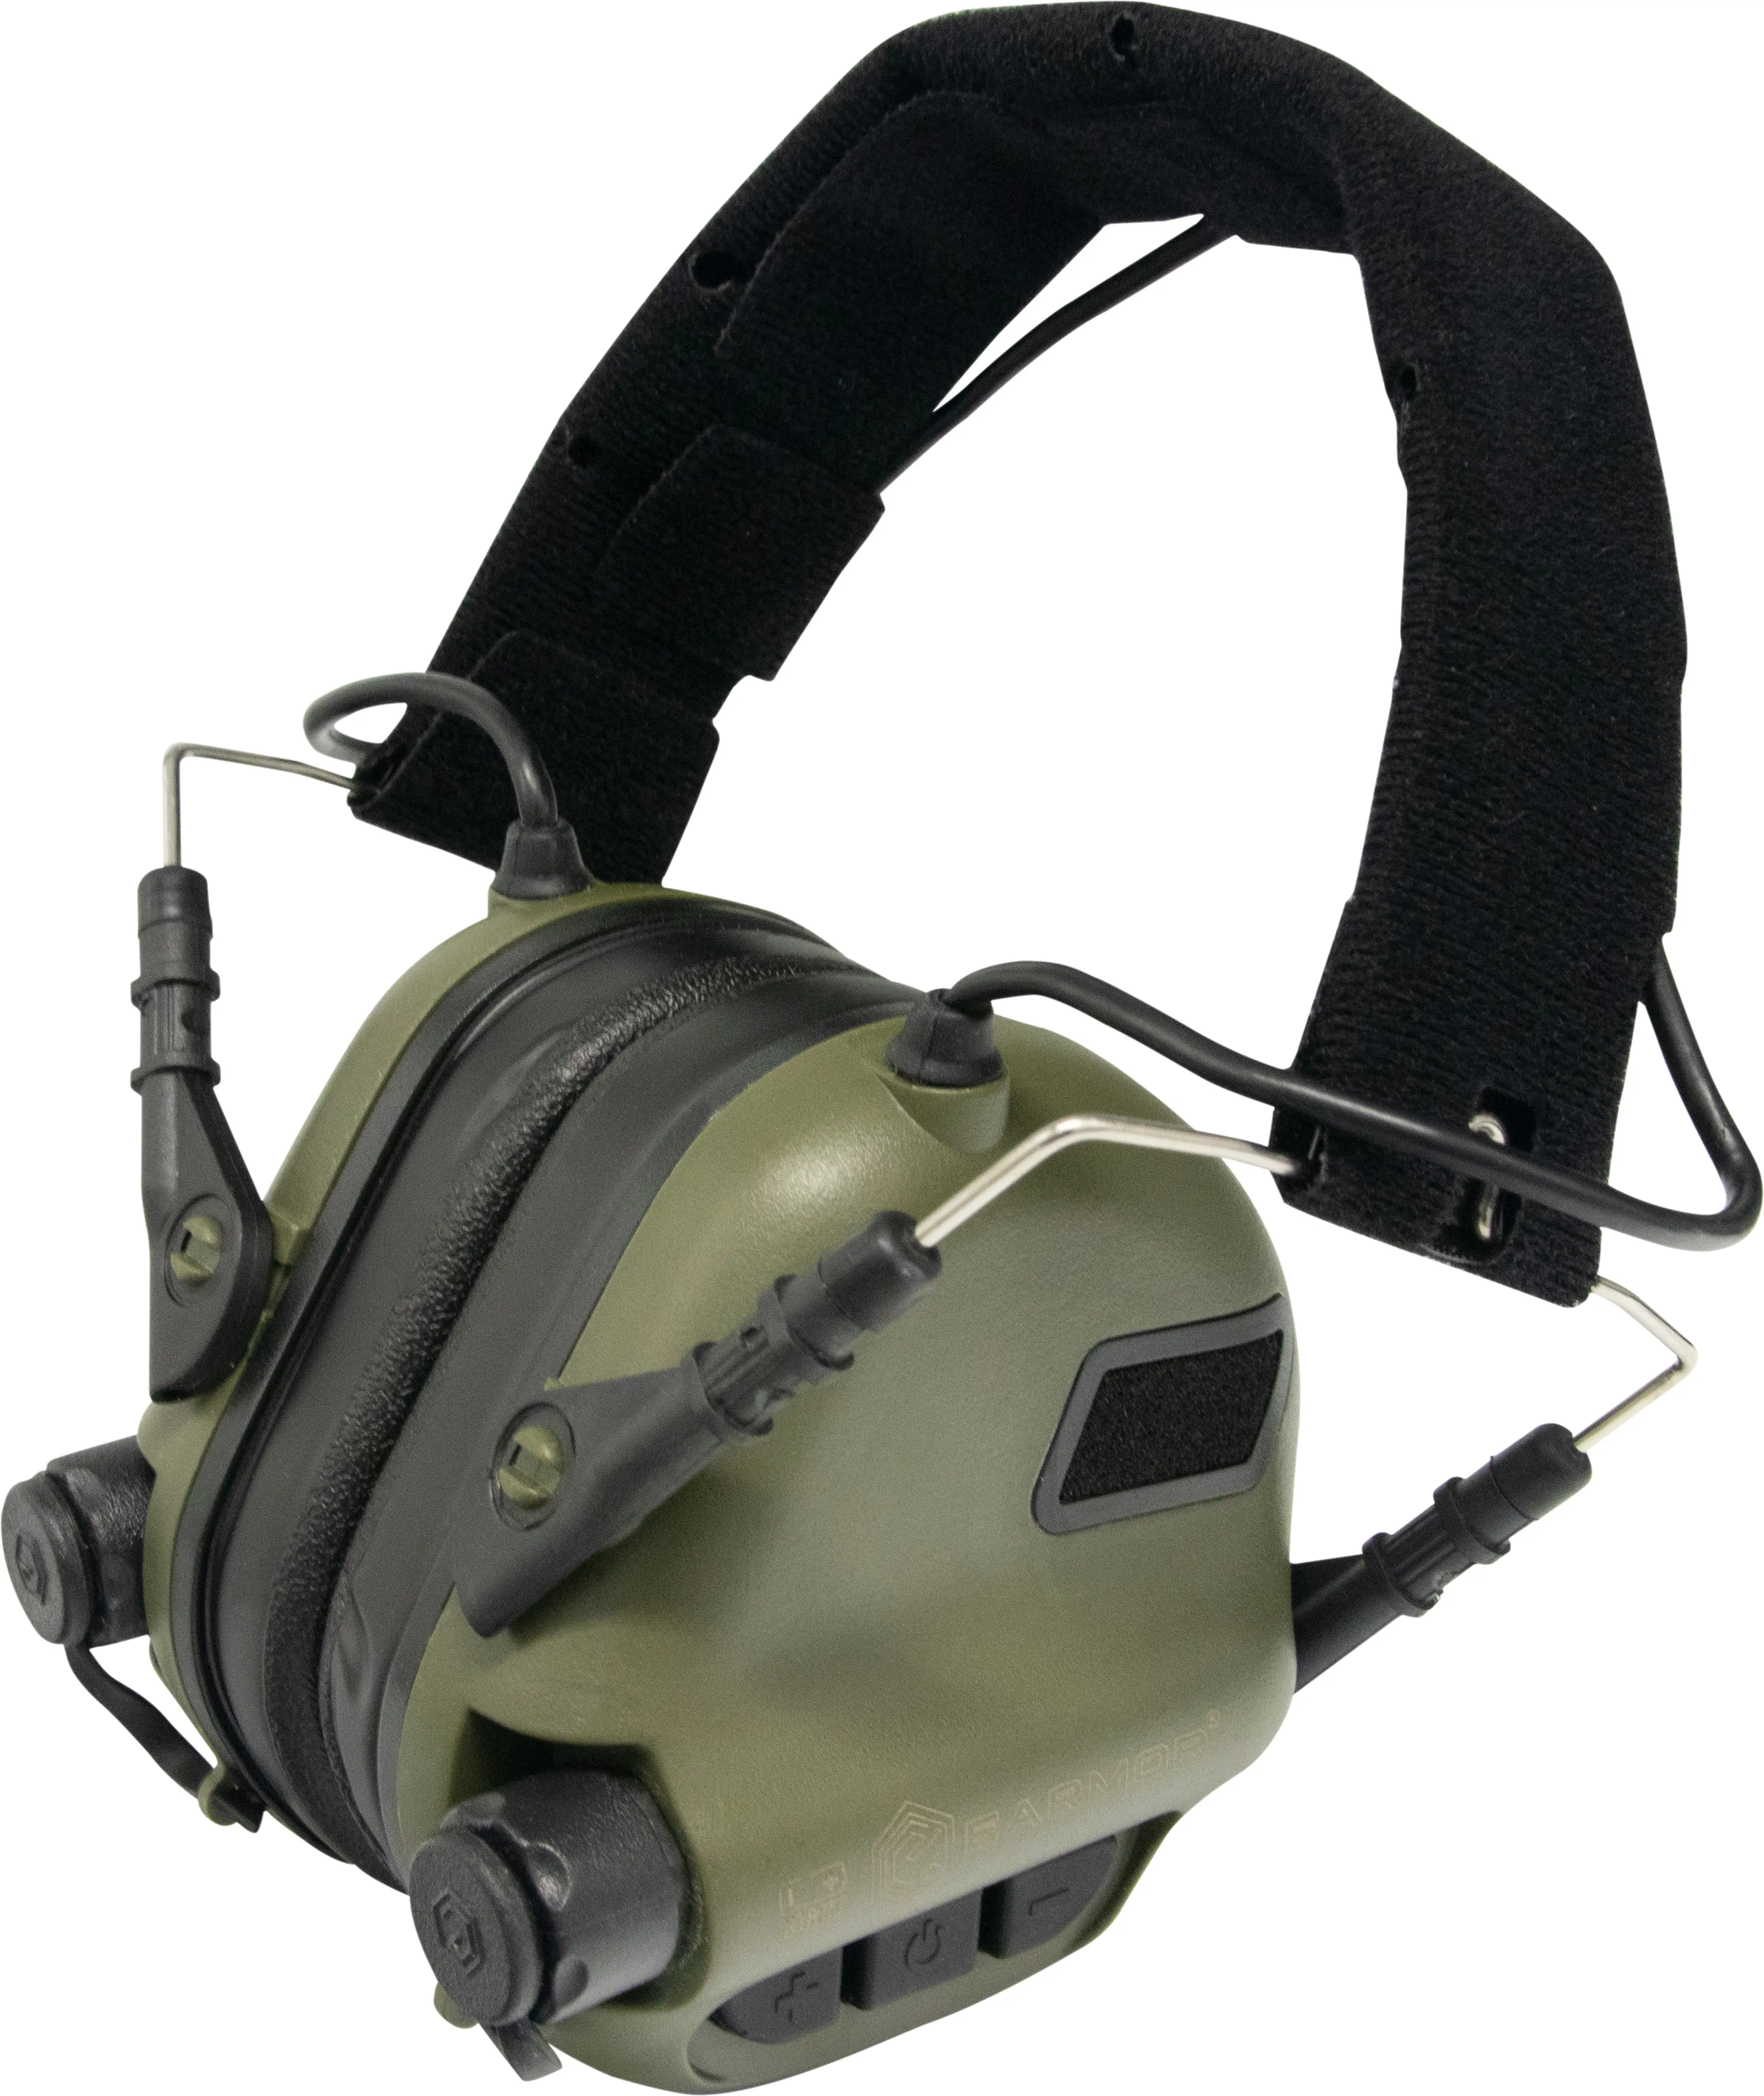 OPSMEN EARMOR M31 MOD3 casque de protection prise de vue électronique casque antibruit